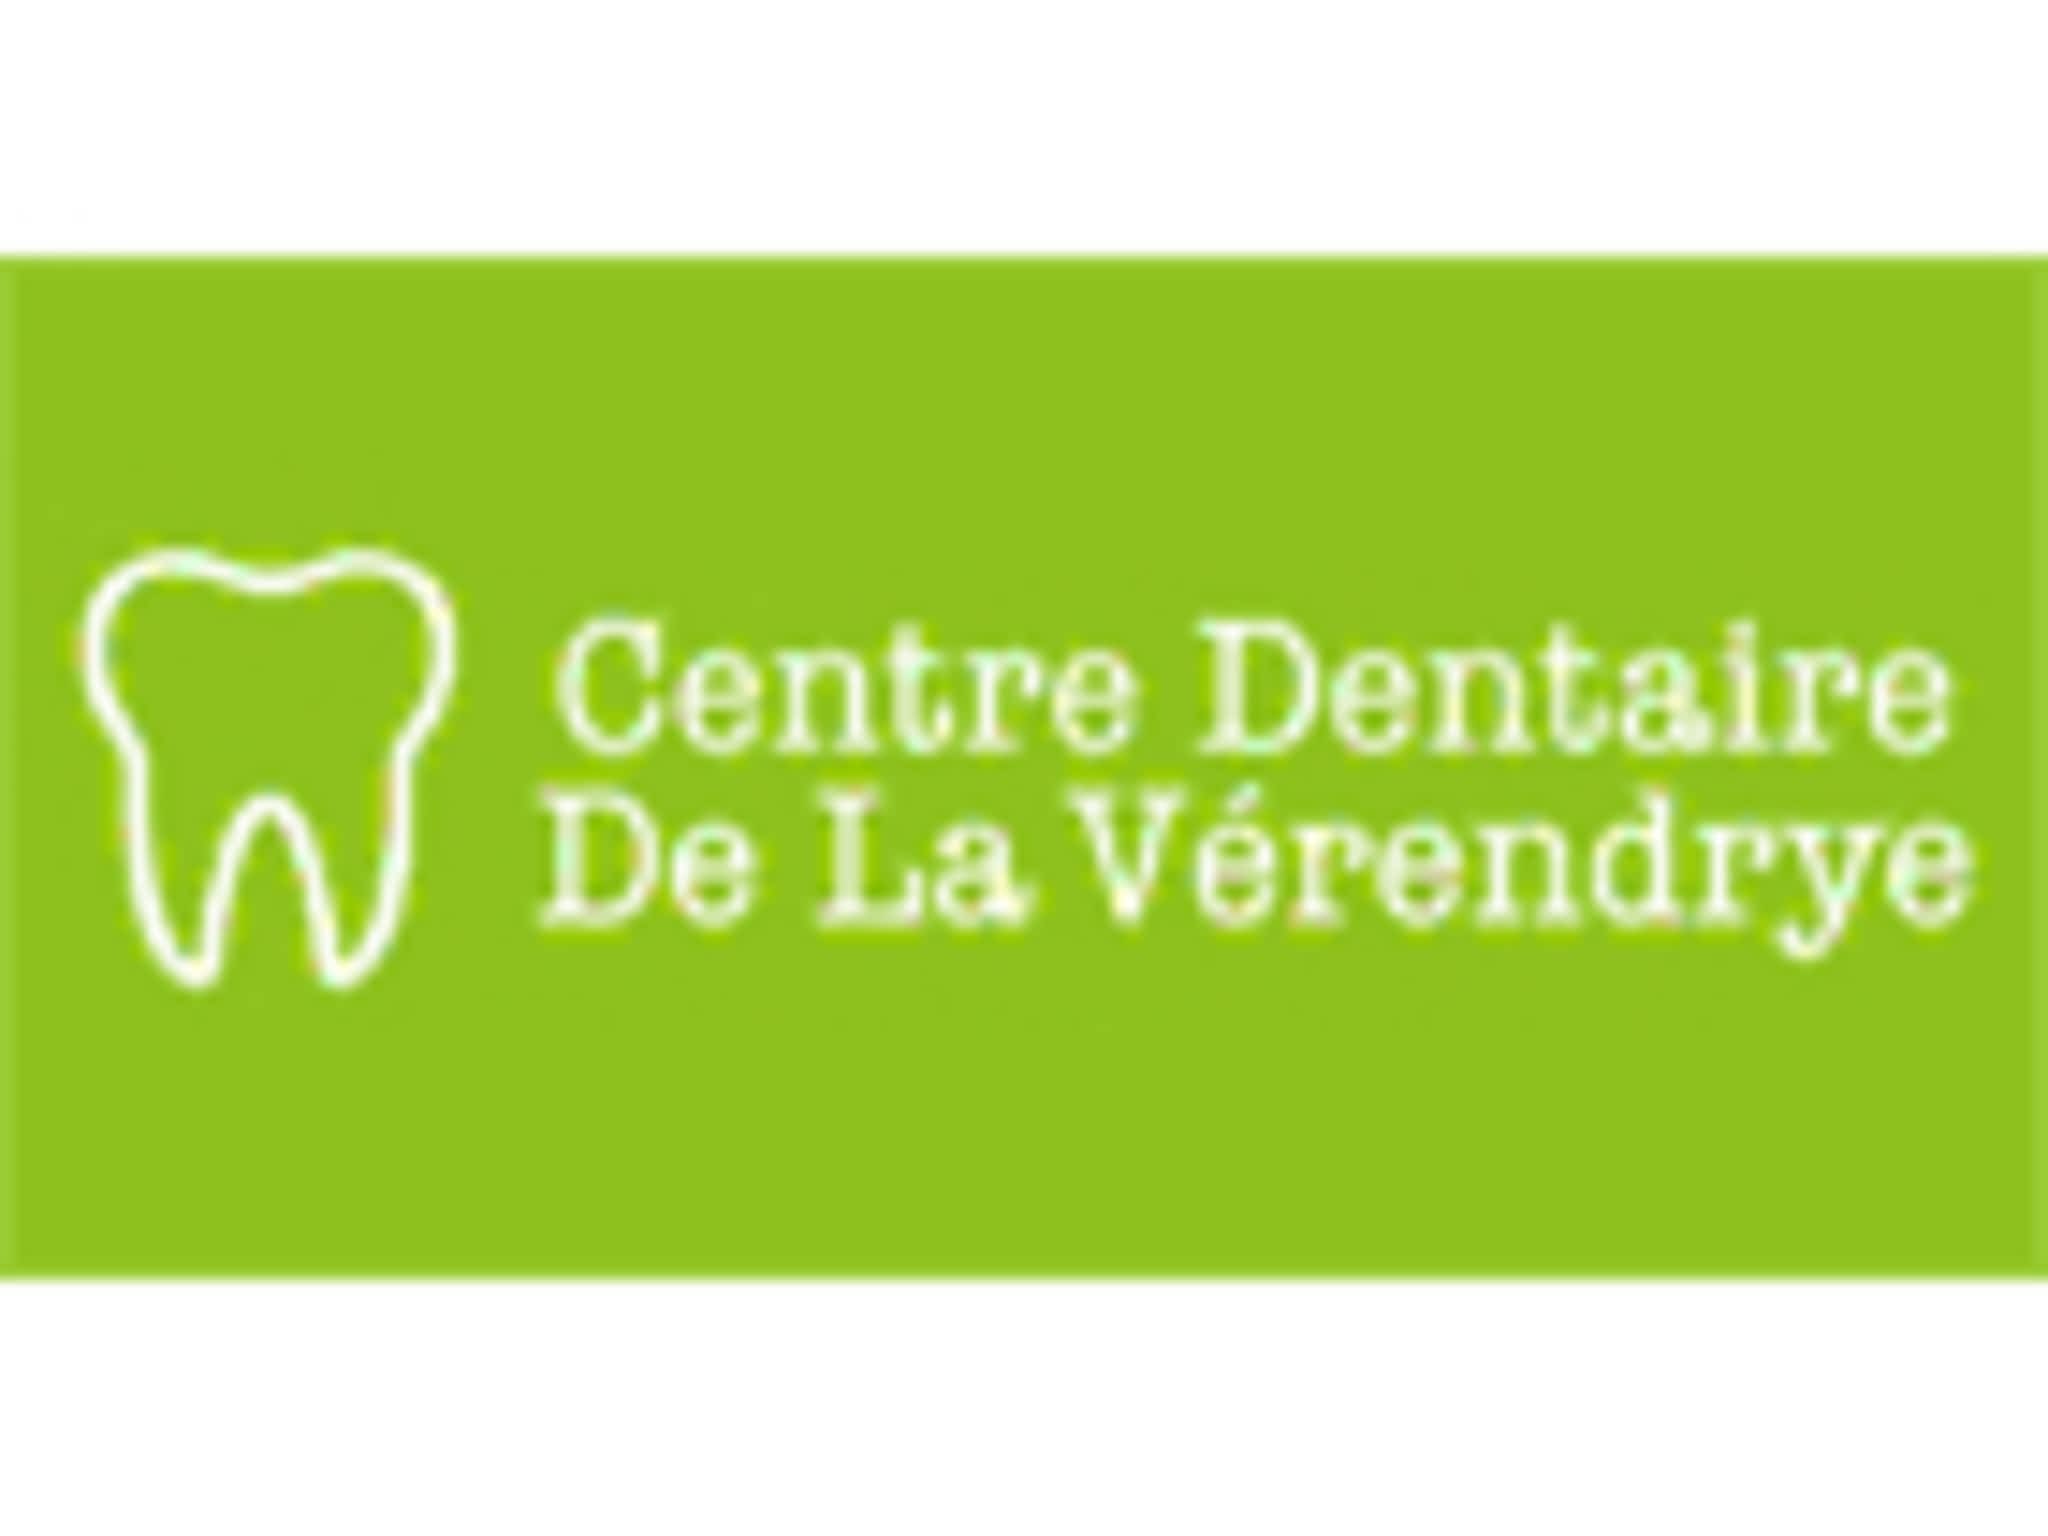 photo Dr Michel Pomerleau - Centre Dentaire De La Vére ndrye